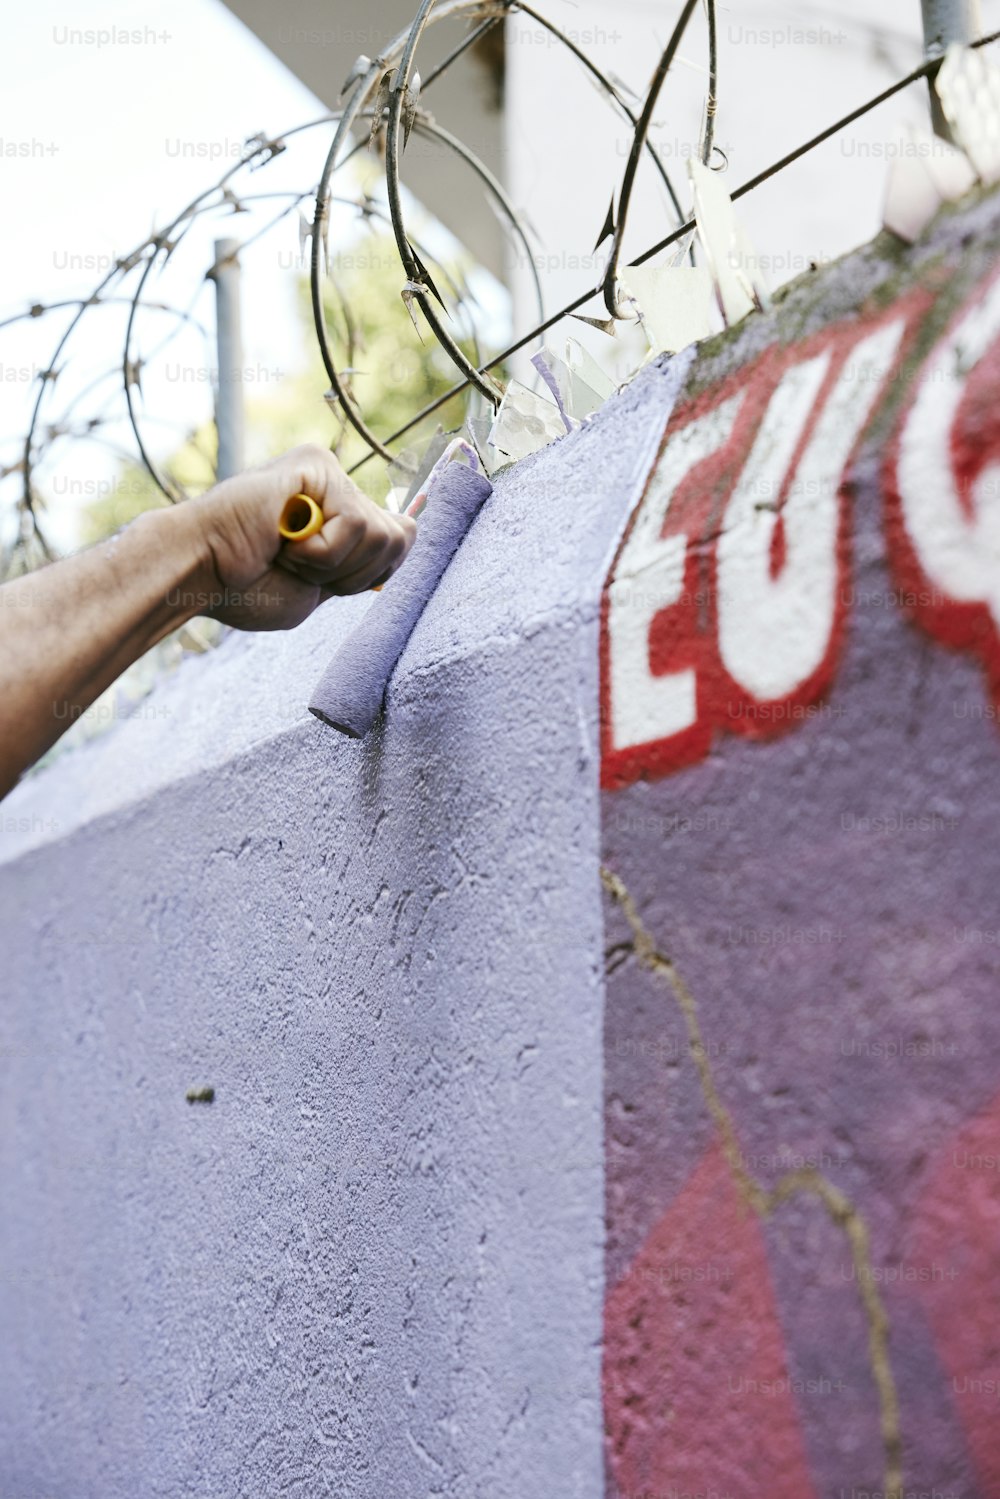 Un hombre está pintando el lado de una pared